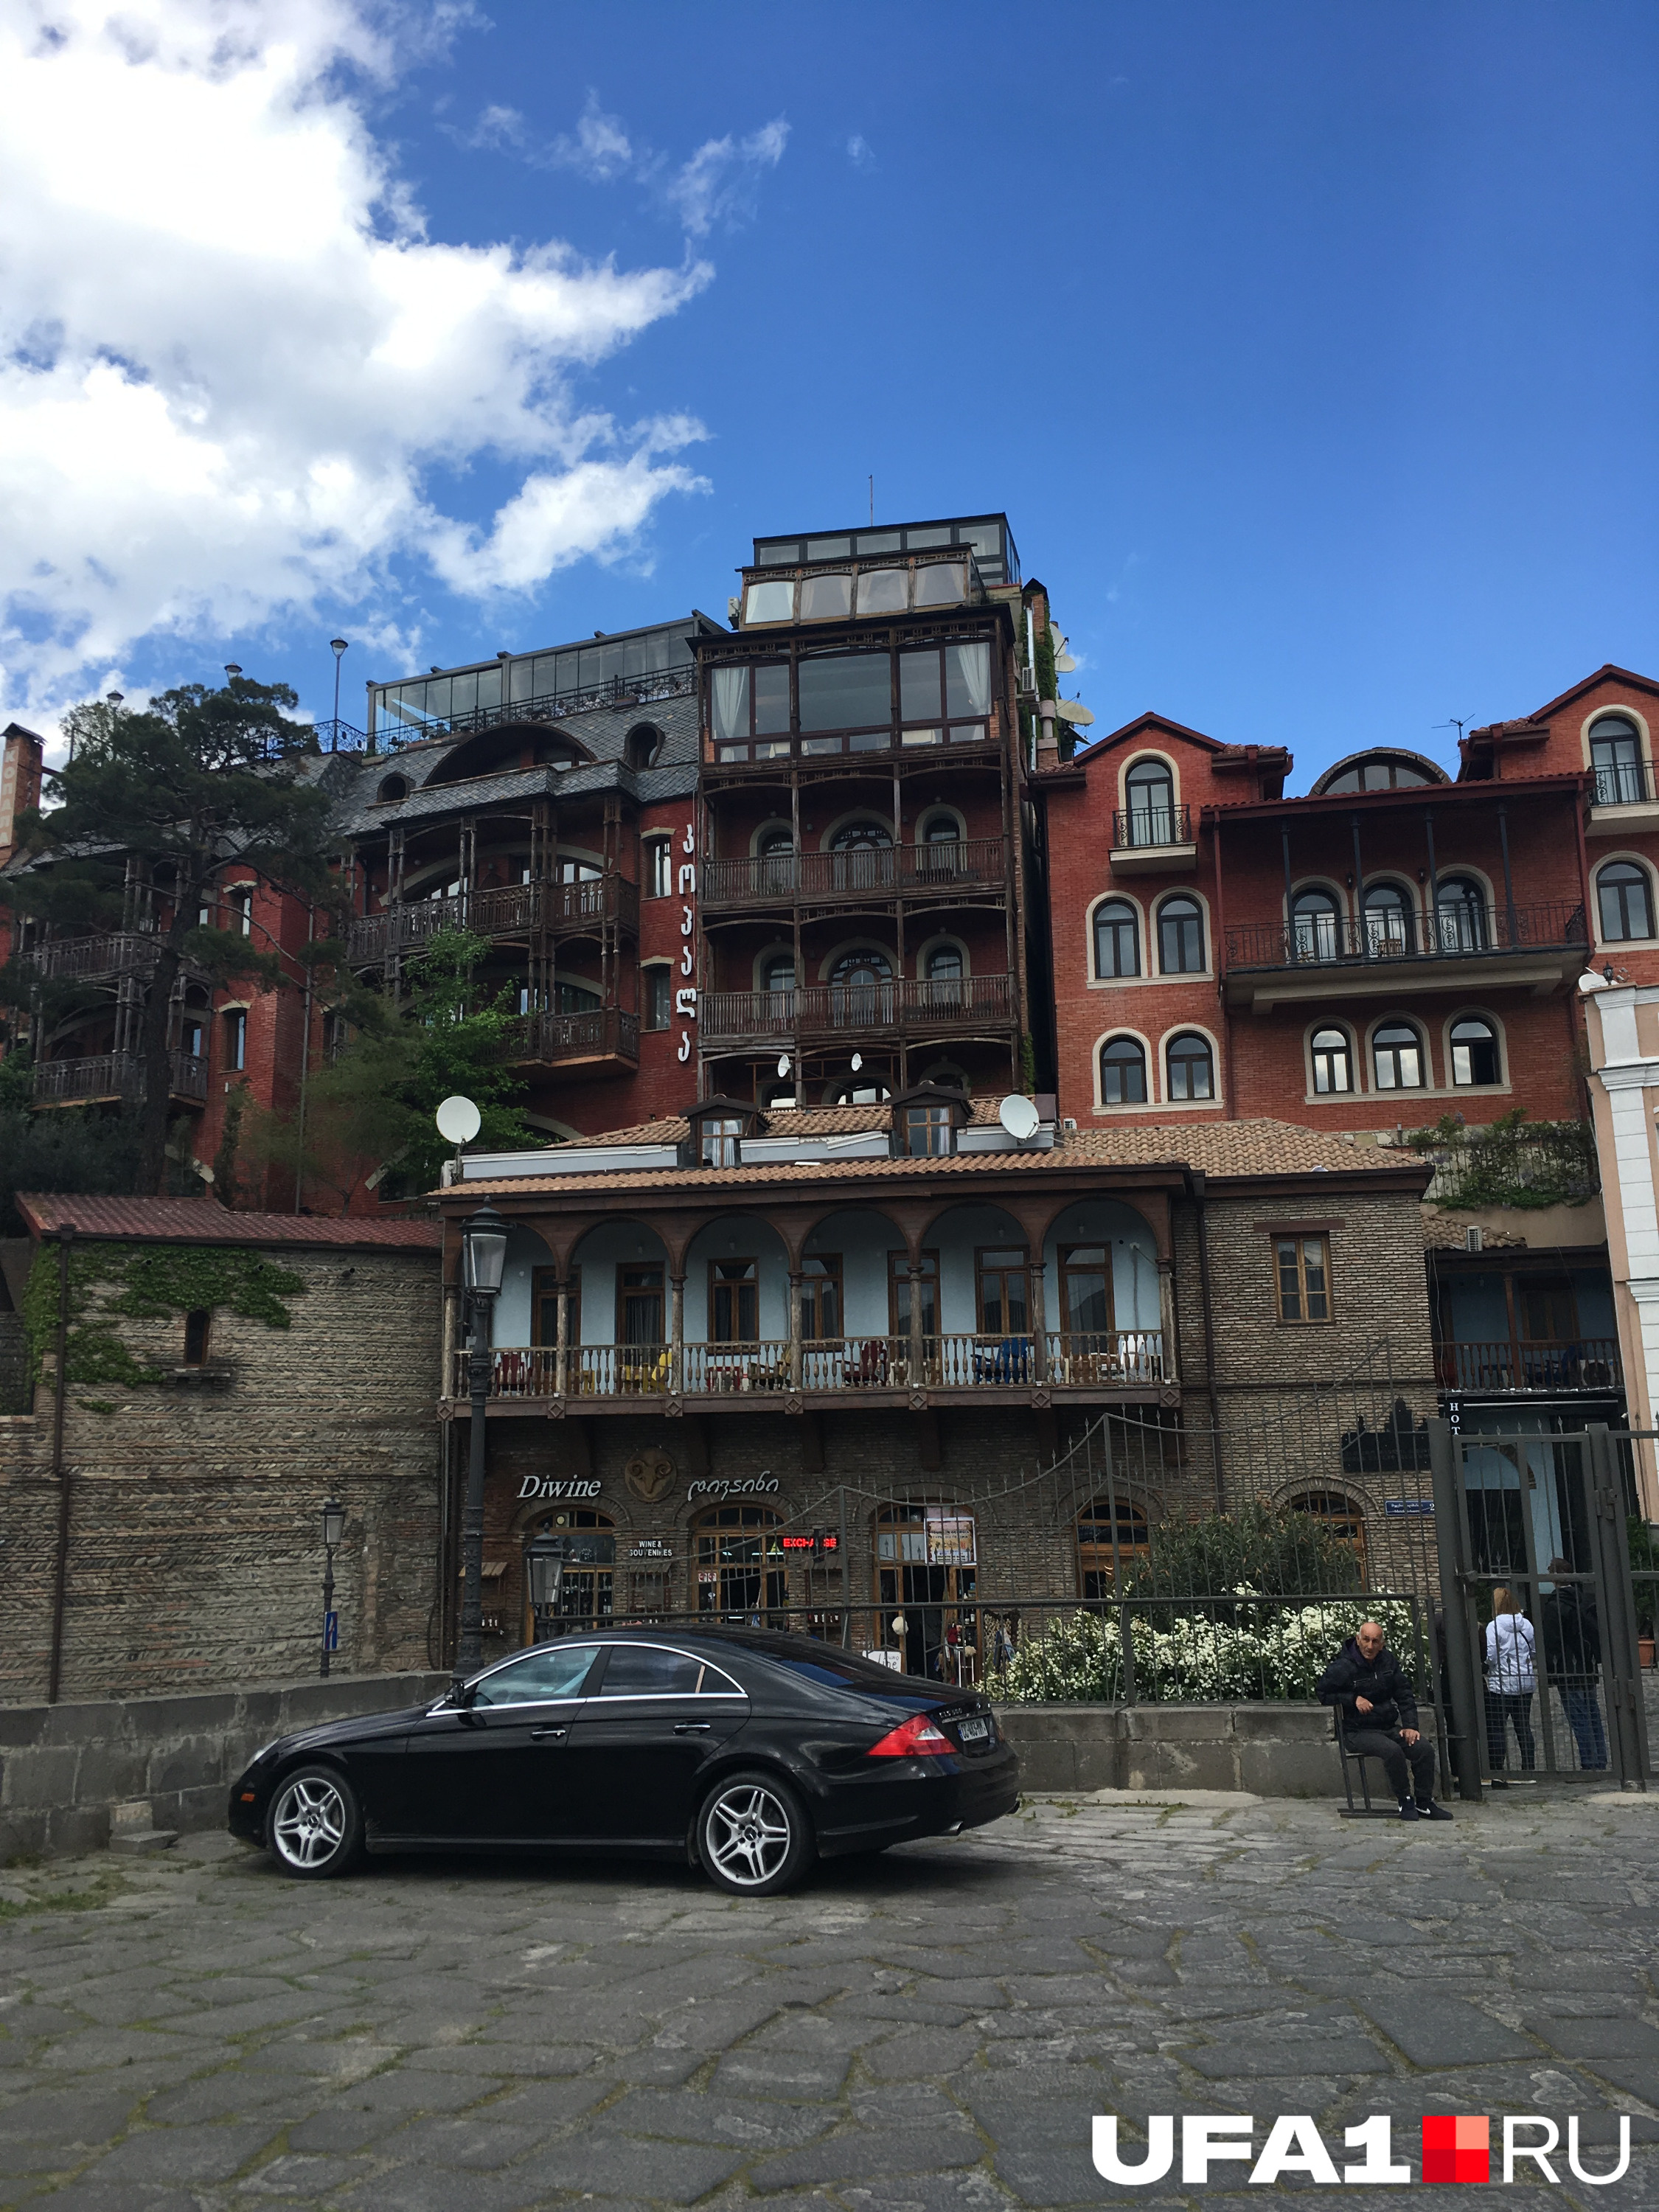 Отдельное удовольствие — наблюдать прекрасные домики Тбилиси и Батуми